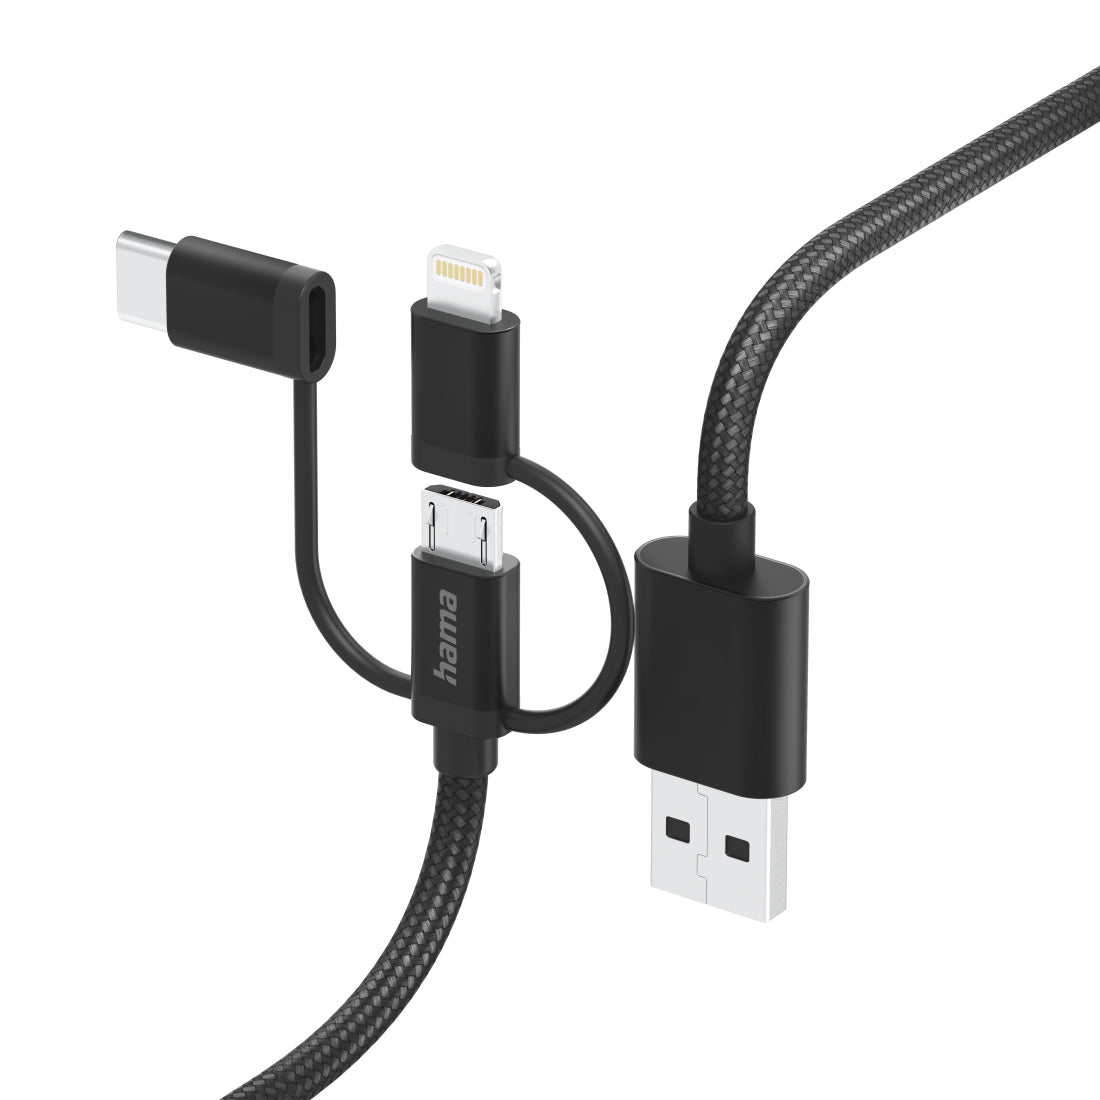 Cable HAMA 3in1 micri USB +USB-C +LTG, 1,5m, negro